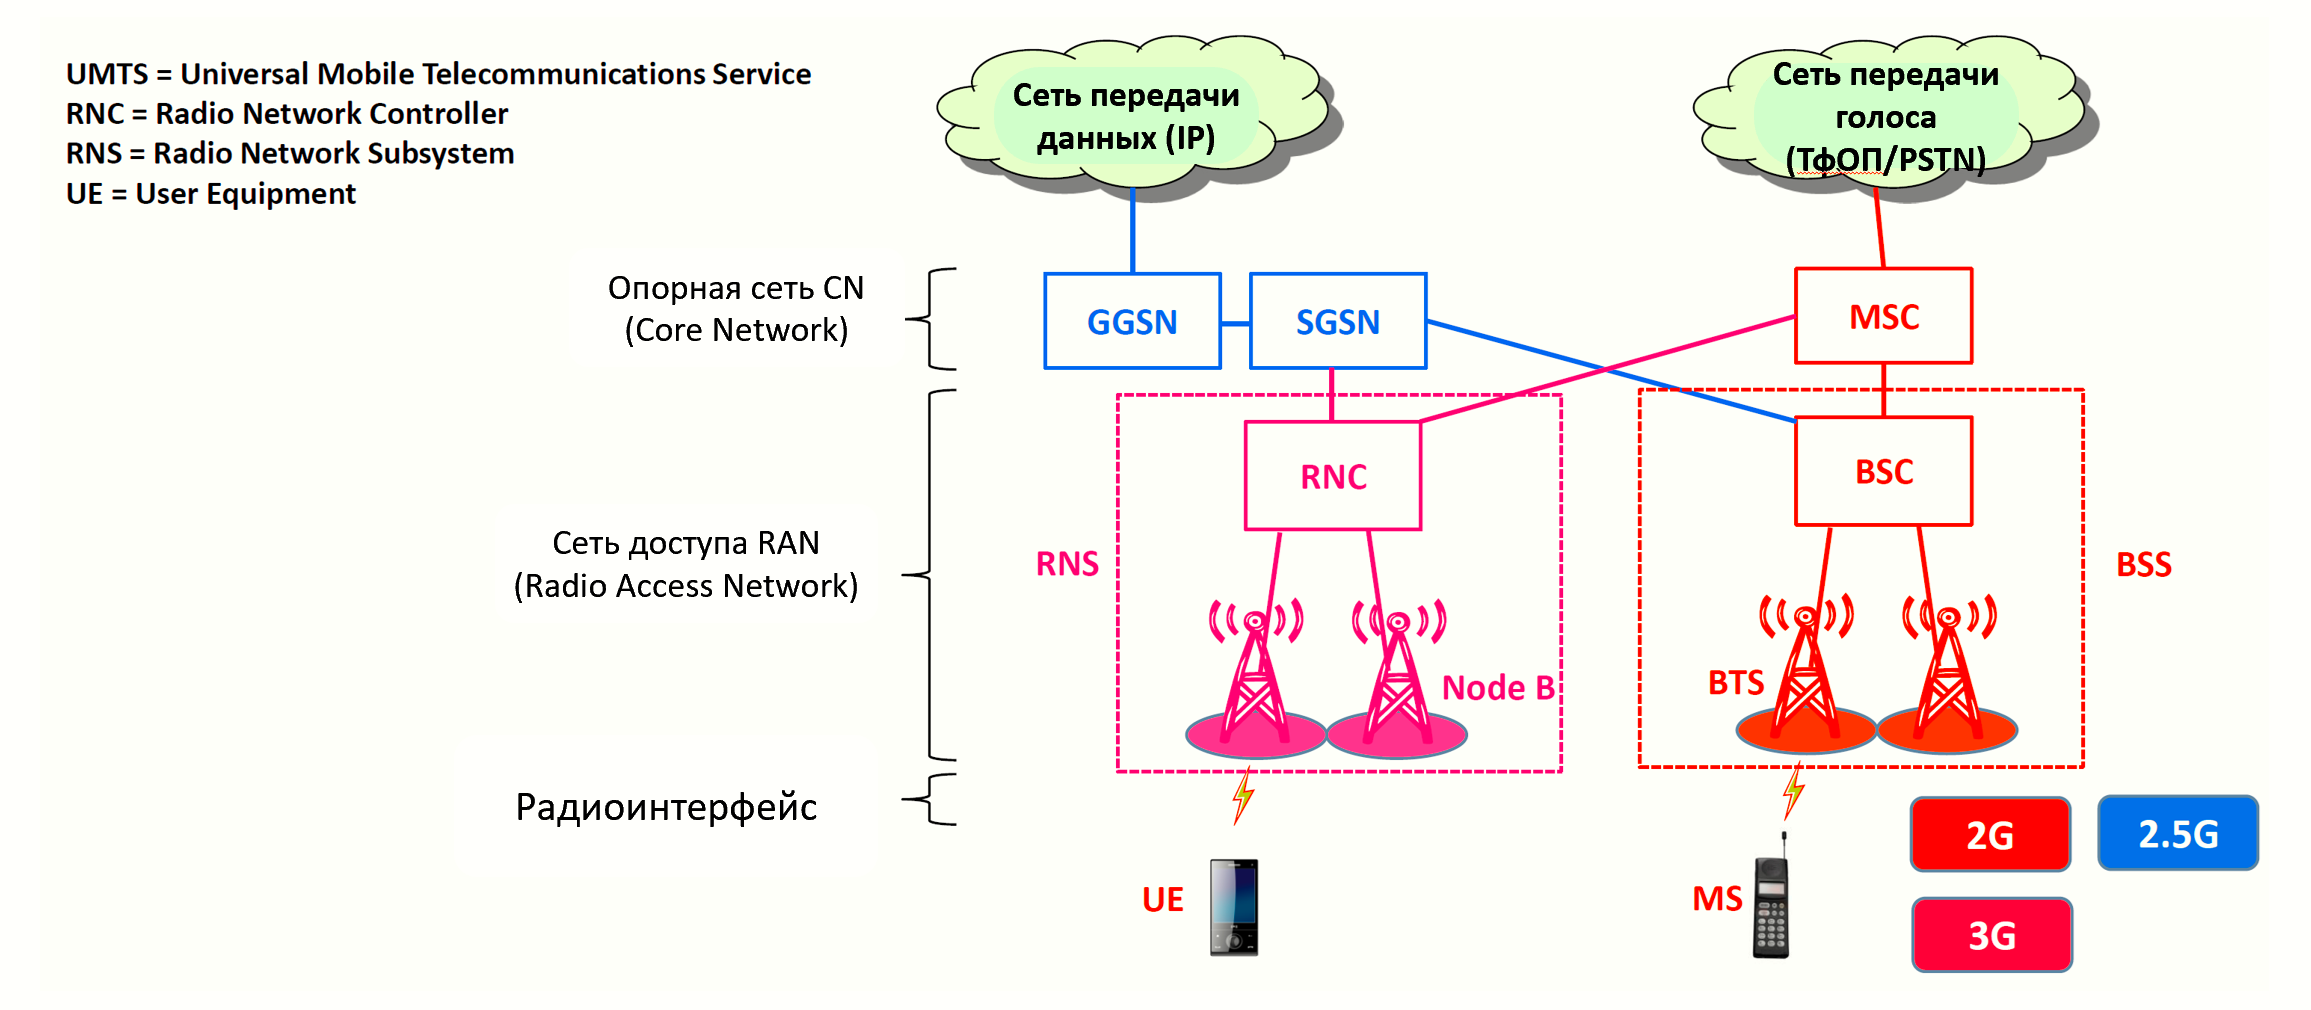 4g информация. Структура сети сотовой связи 3g 4g. Технологии сотовой связи 2g 3g 4g. Поколения сетей сотовой связи 1g 2g 3g 4g 5g. Схема сотовой связи 2g, 3g.